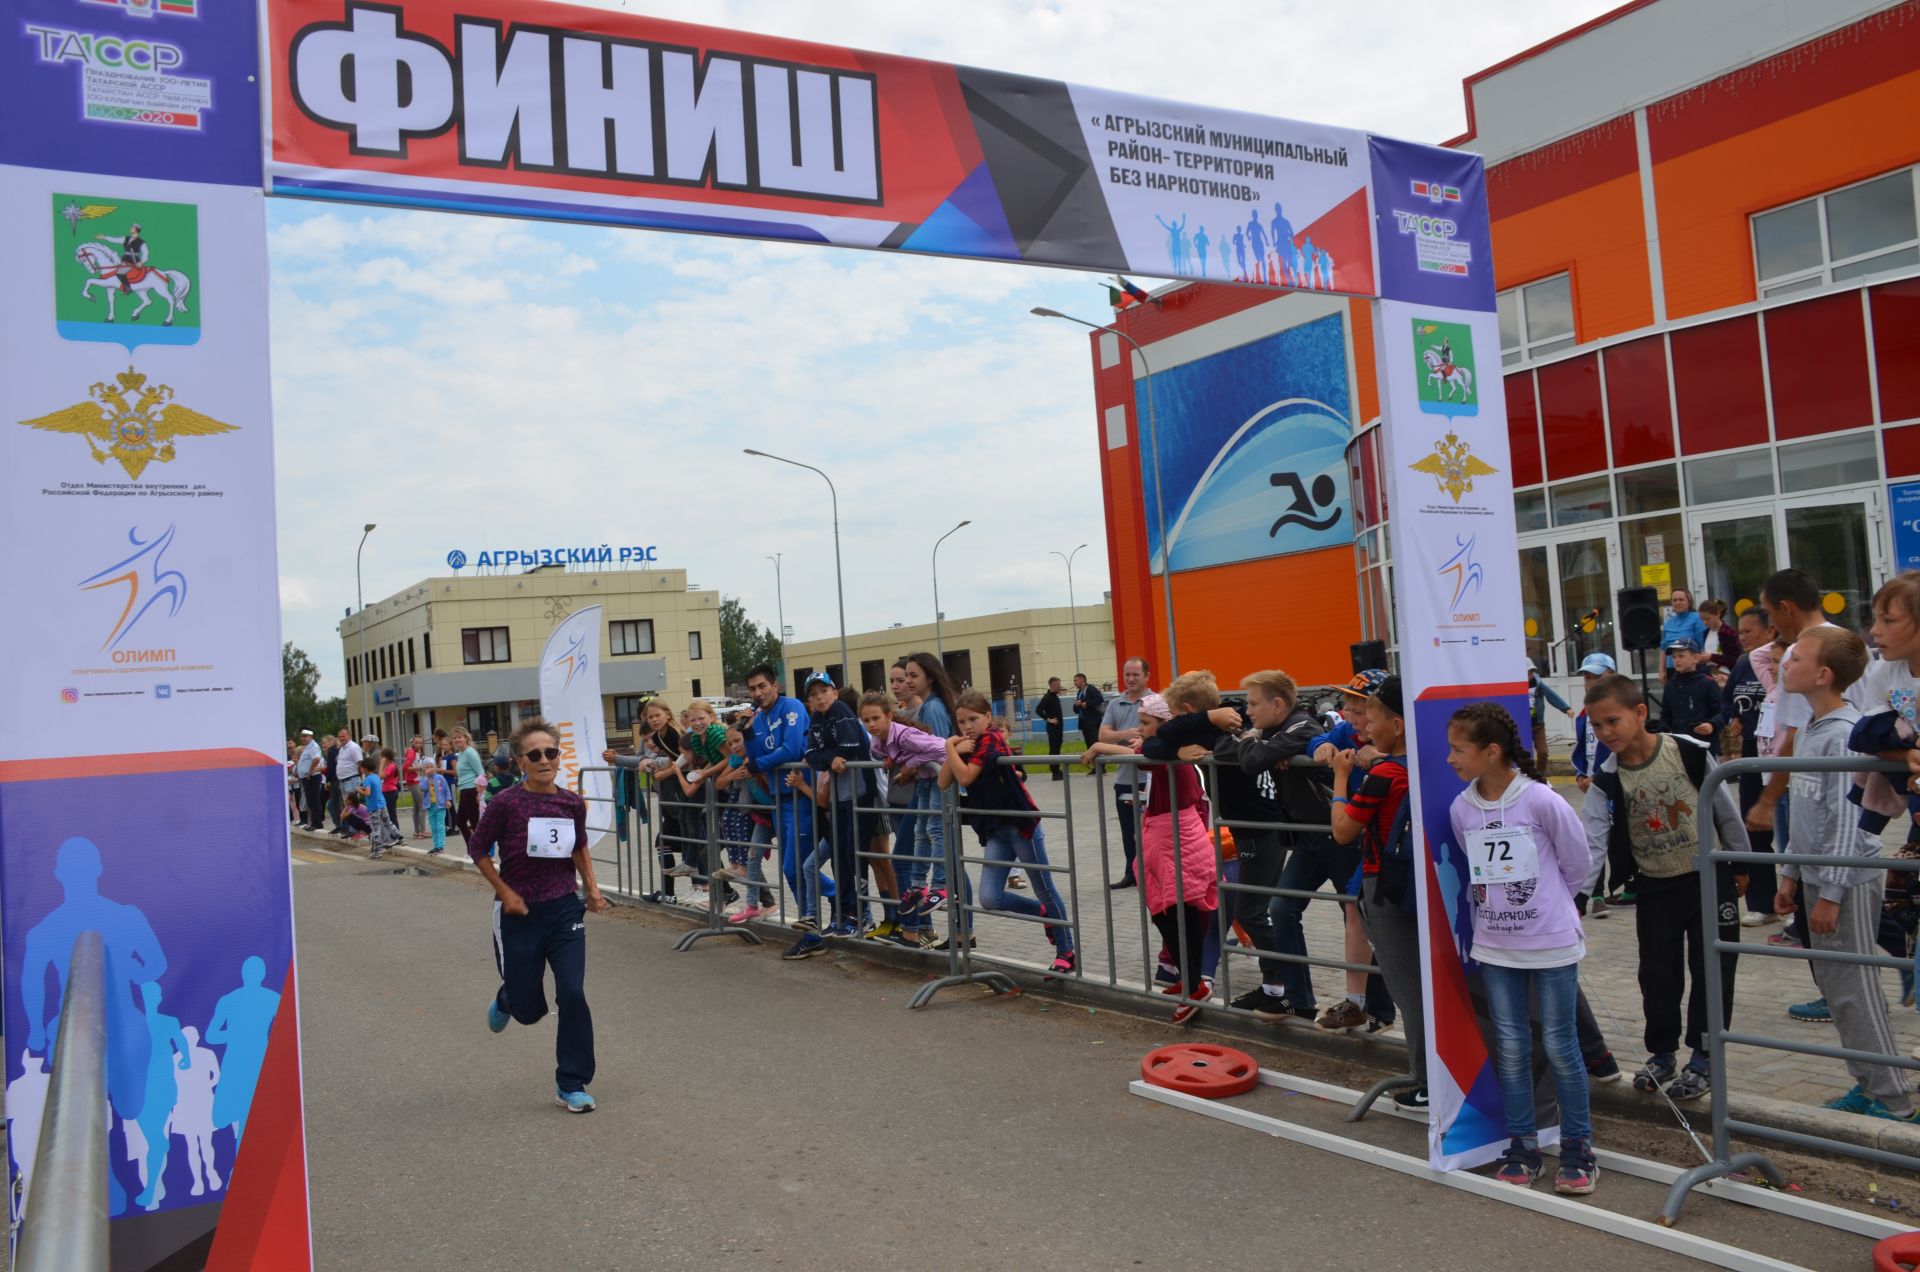 Сегодня агрызцы присоединились ко Всероссийскому легкоатлетическому пробегу под лозунгом "Россия - территория без наркотиков"